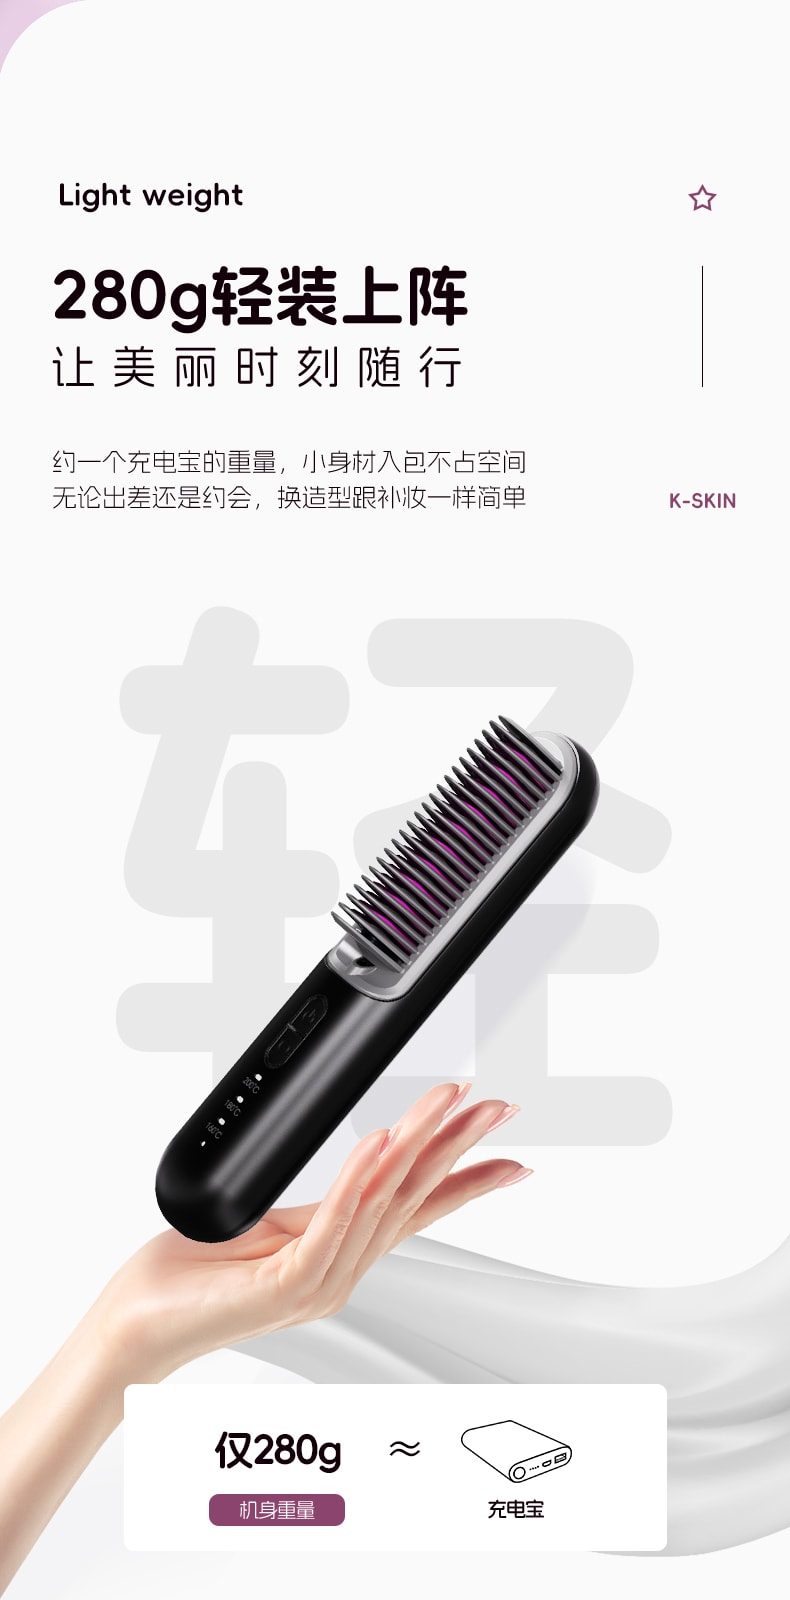 中國 K·SKIN金米 無線直髮梳 負離子護髮 便攜美 兩用髮梳 電梳子 直板夾 防靜電 KD382S 1台